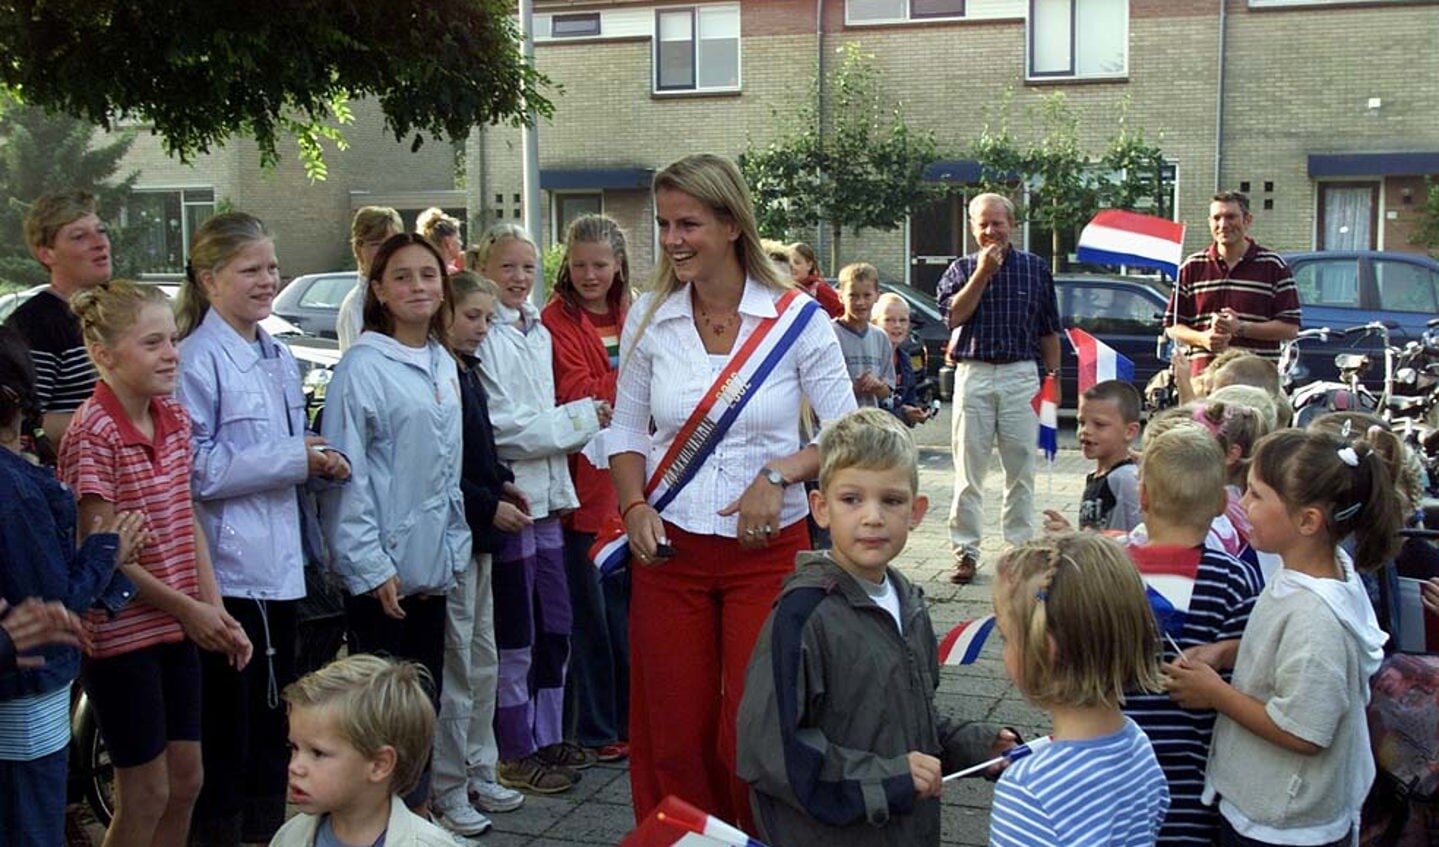 Ivon was in 2002 Jamkoningin. Foto: Archief gemeente Berkelland